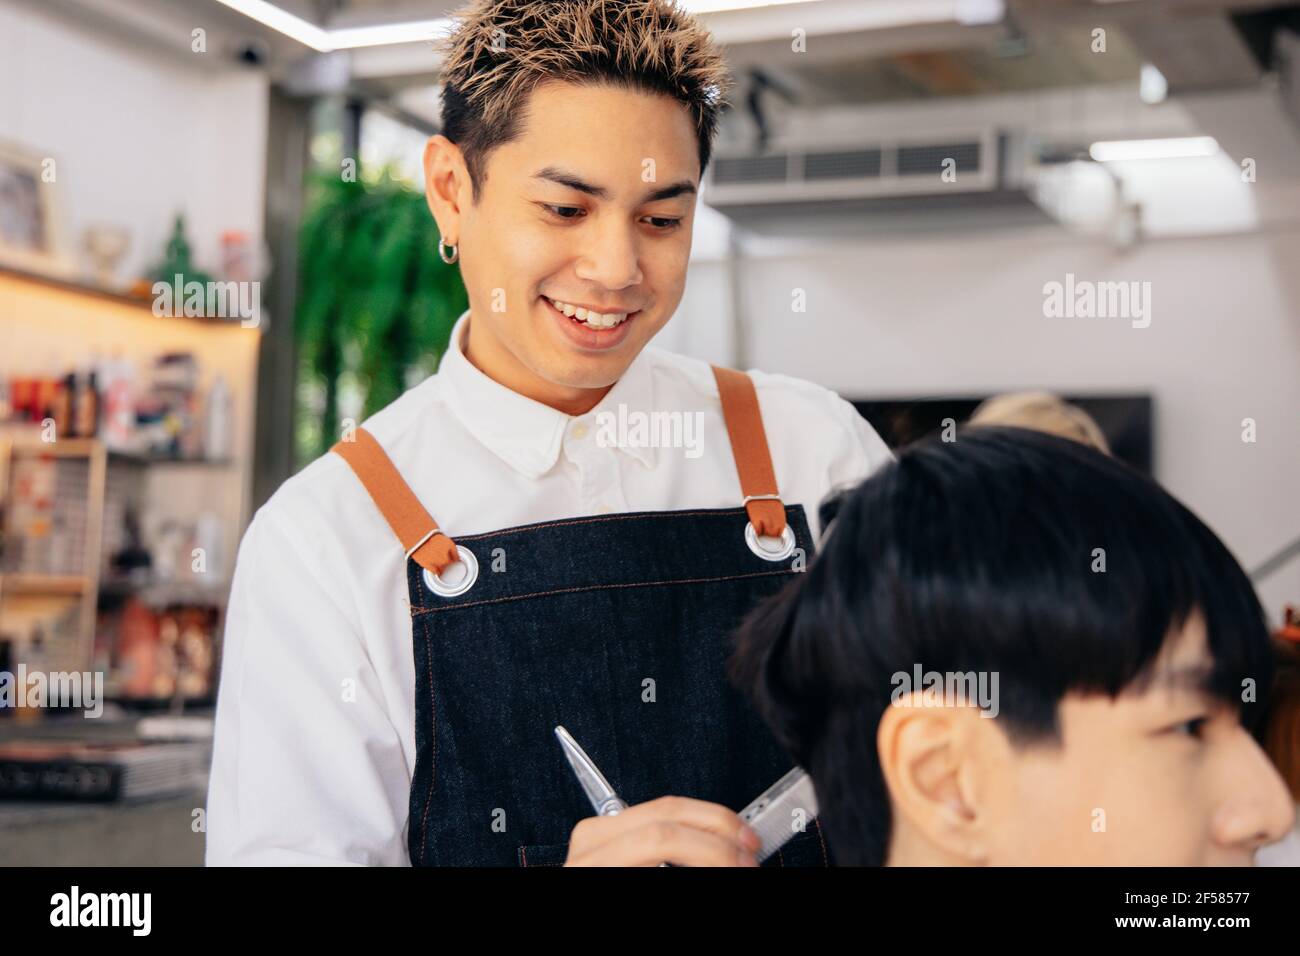 Glücklich junge asiatische männliche Friseur lächelnd trägt Schürze in modernen Salon hält Pinsel und Schere Schneiden Haar des Kunden Stockfoto